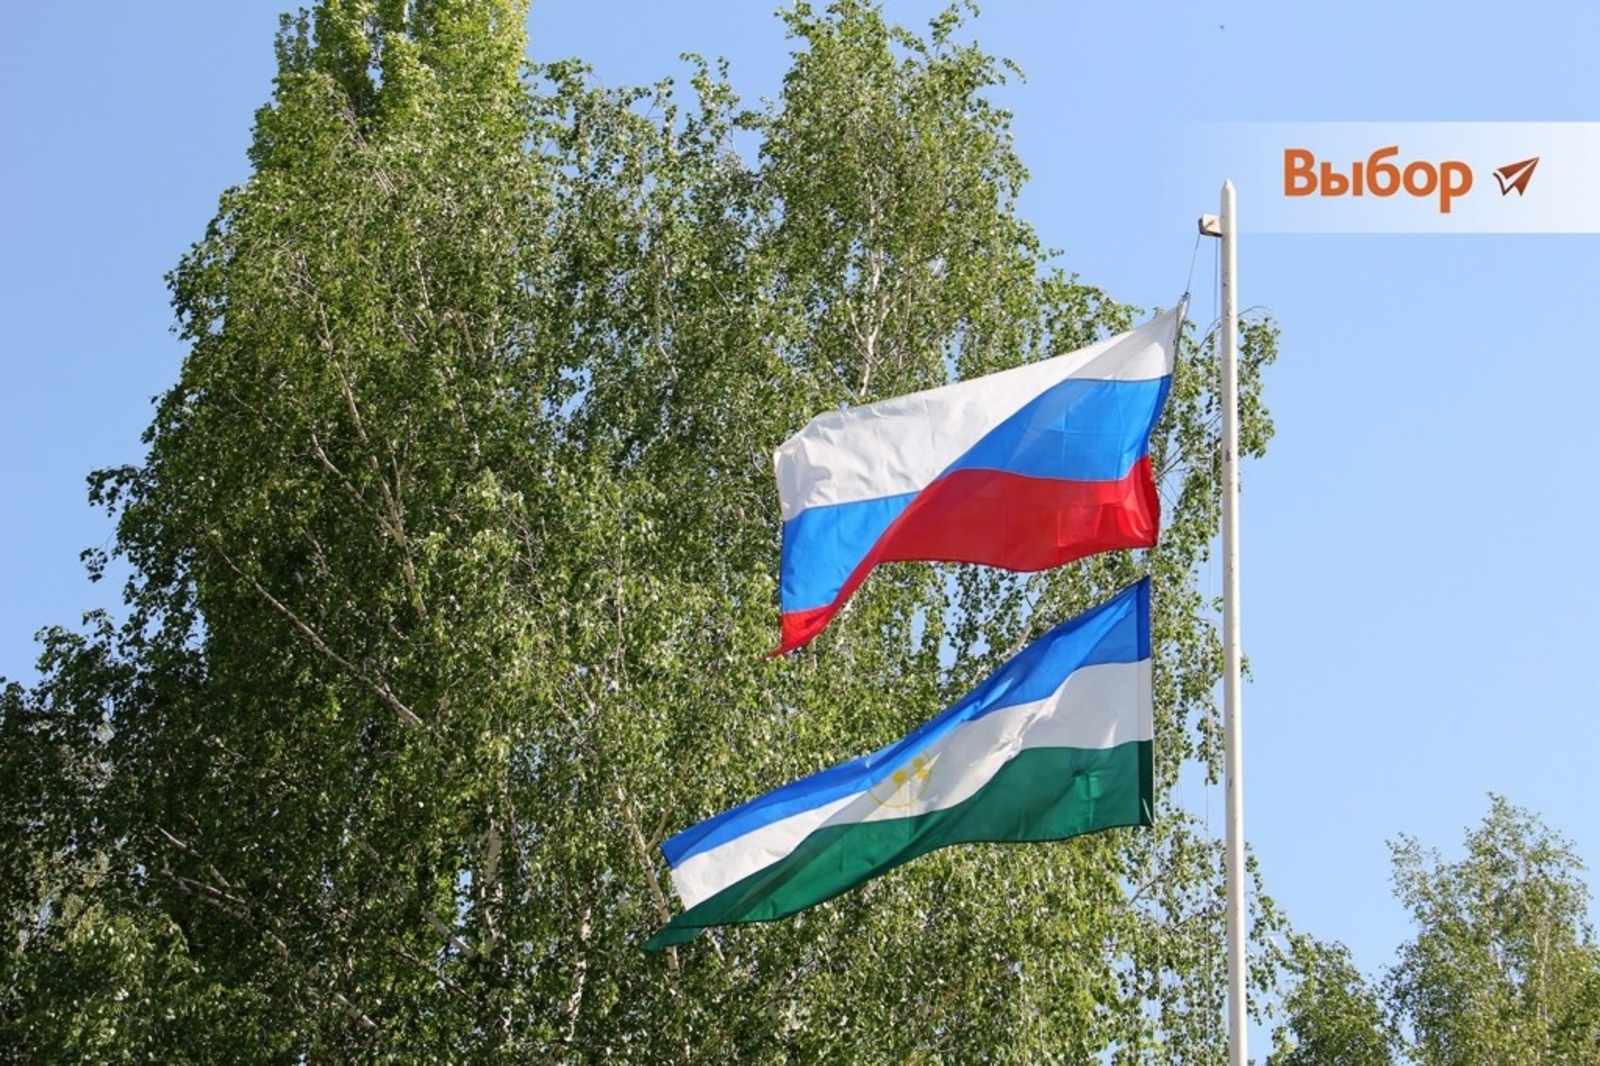 Башкирия вошла в Топ-7 по численности населения среди субъектов России